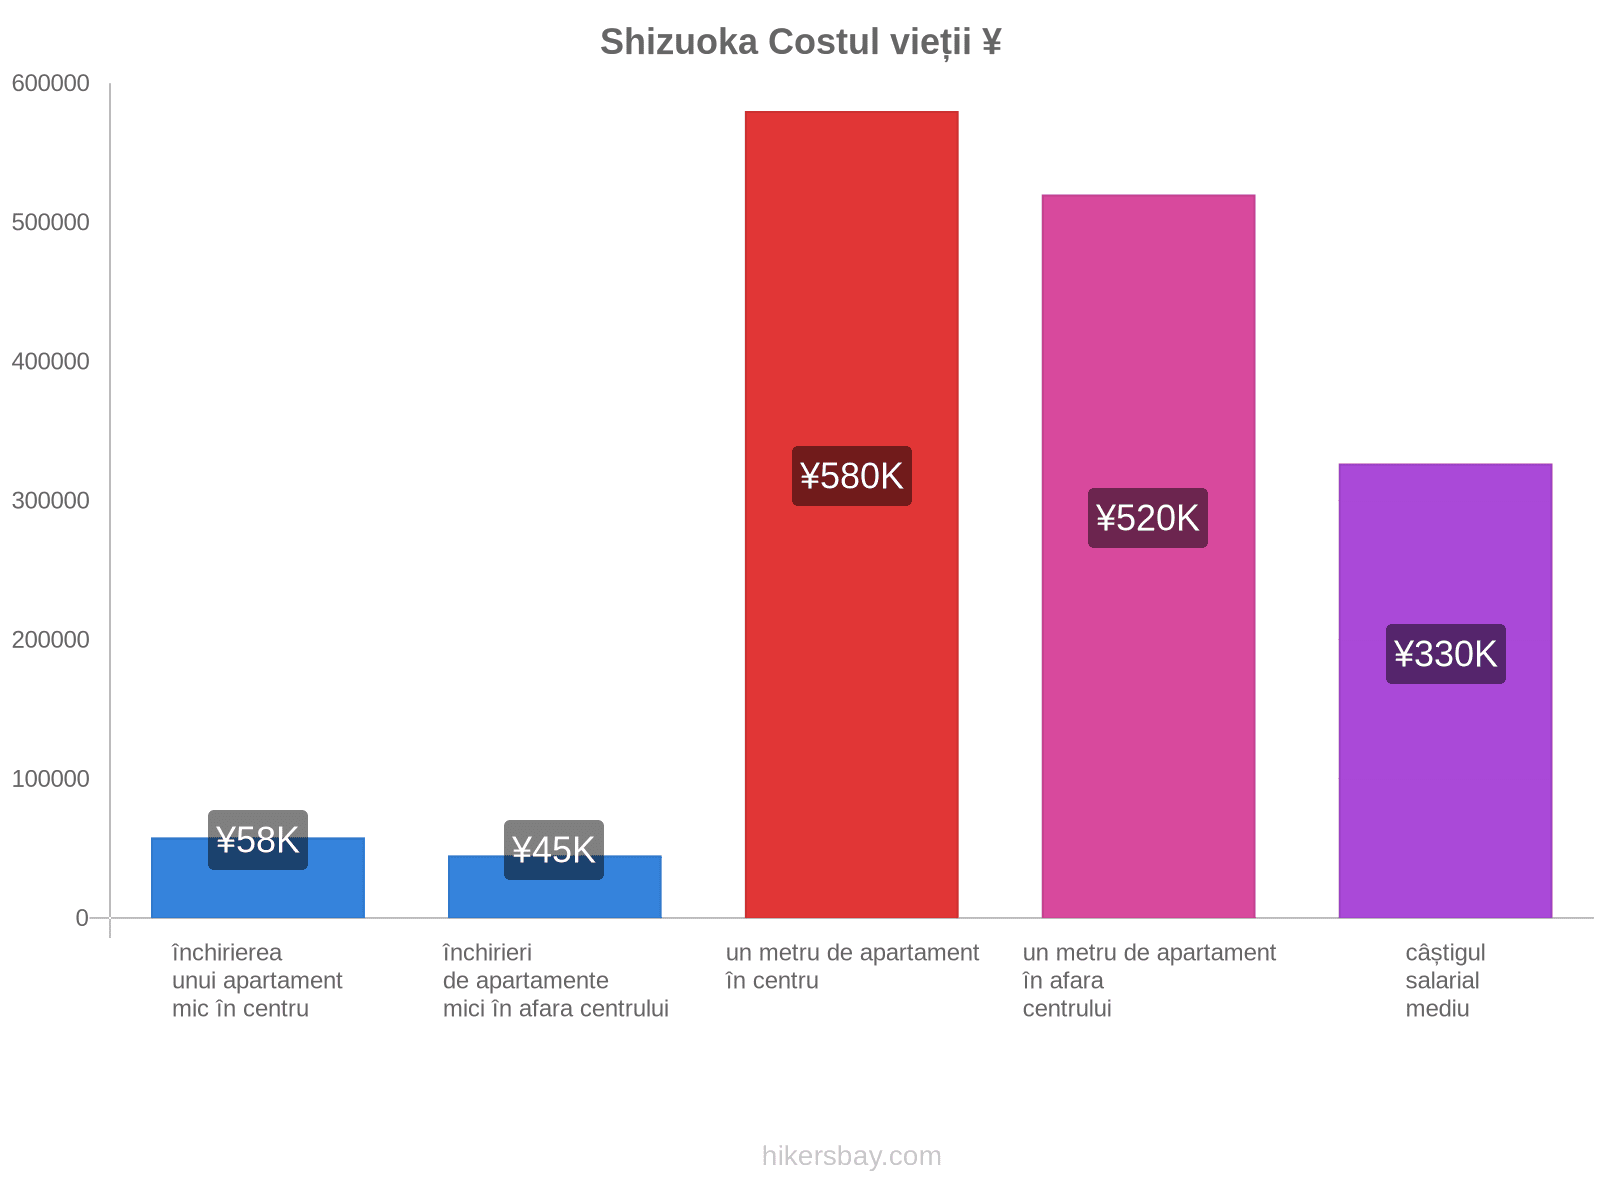 Shizuoka costul vieții hikersbay.com